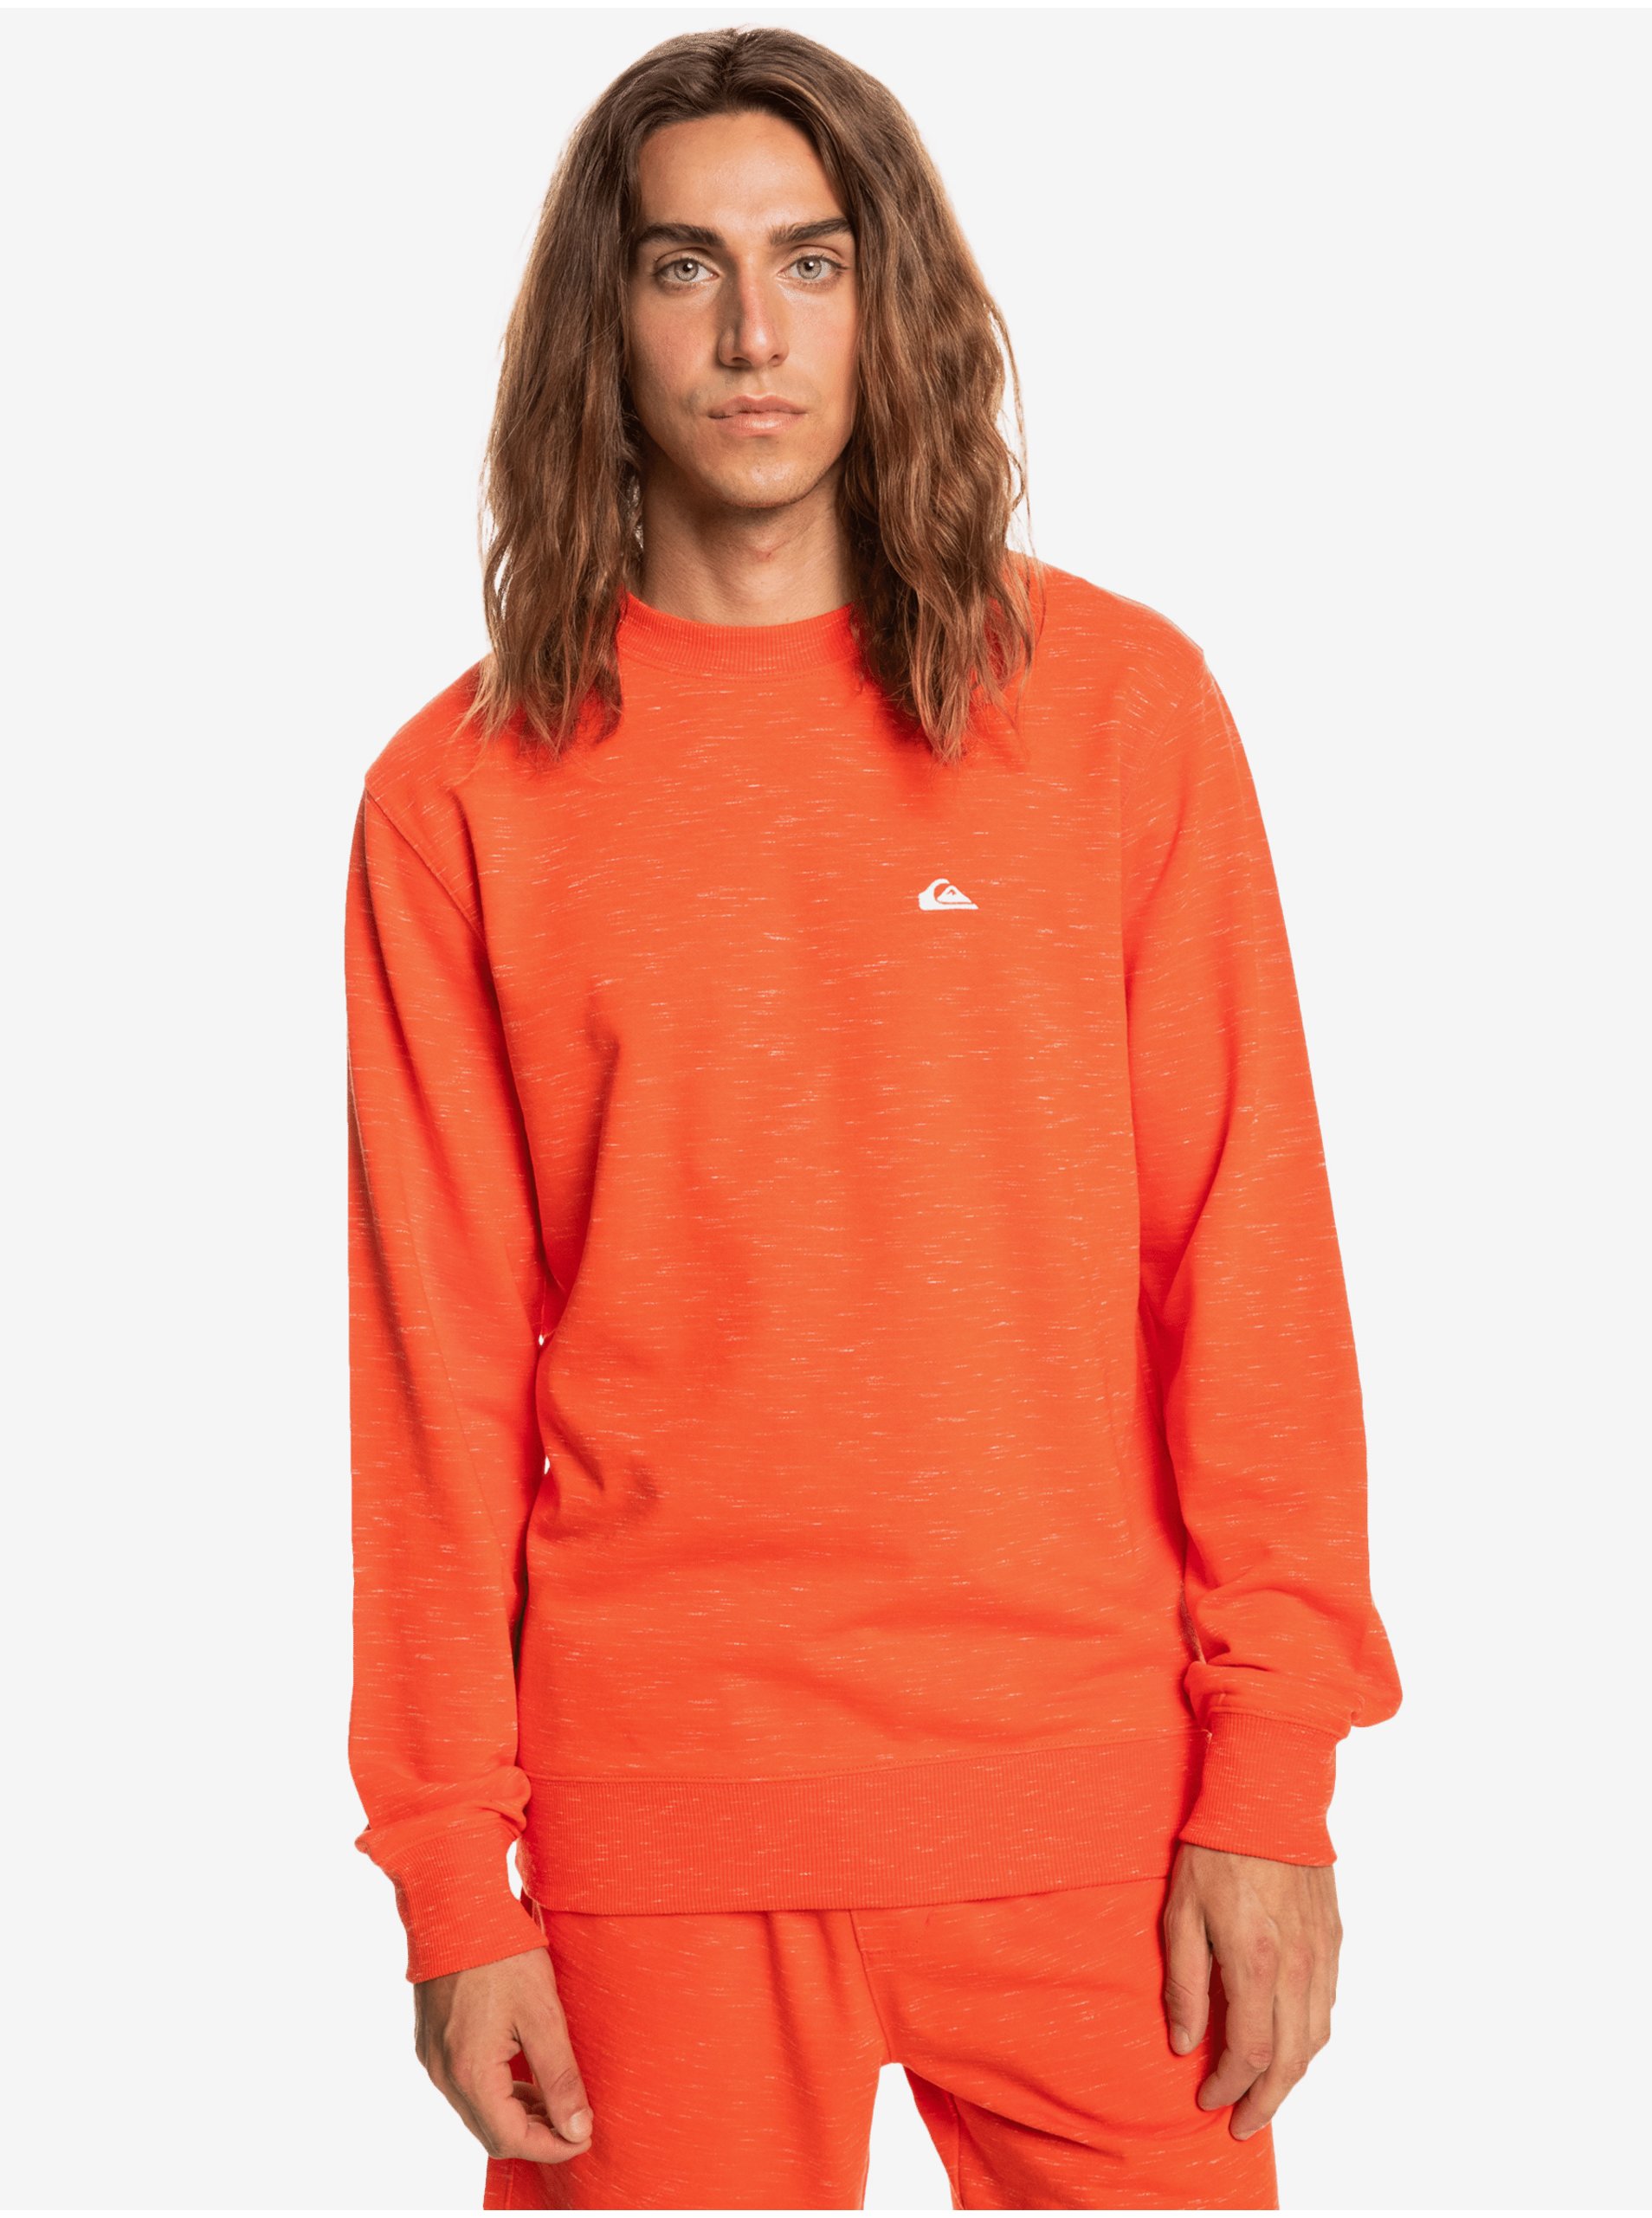 Orange Men's Sweatshirt Quiksilver Bayrise - Men